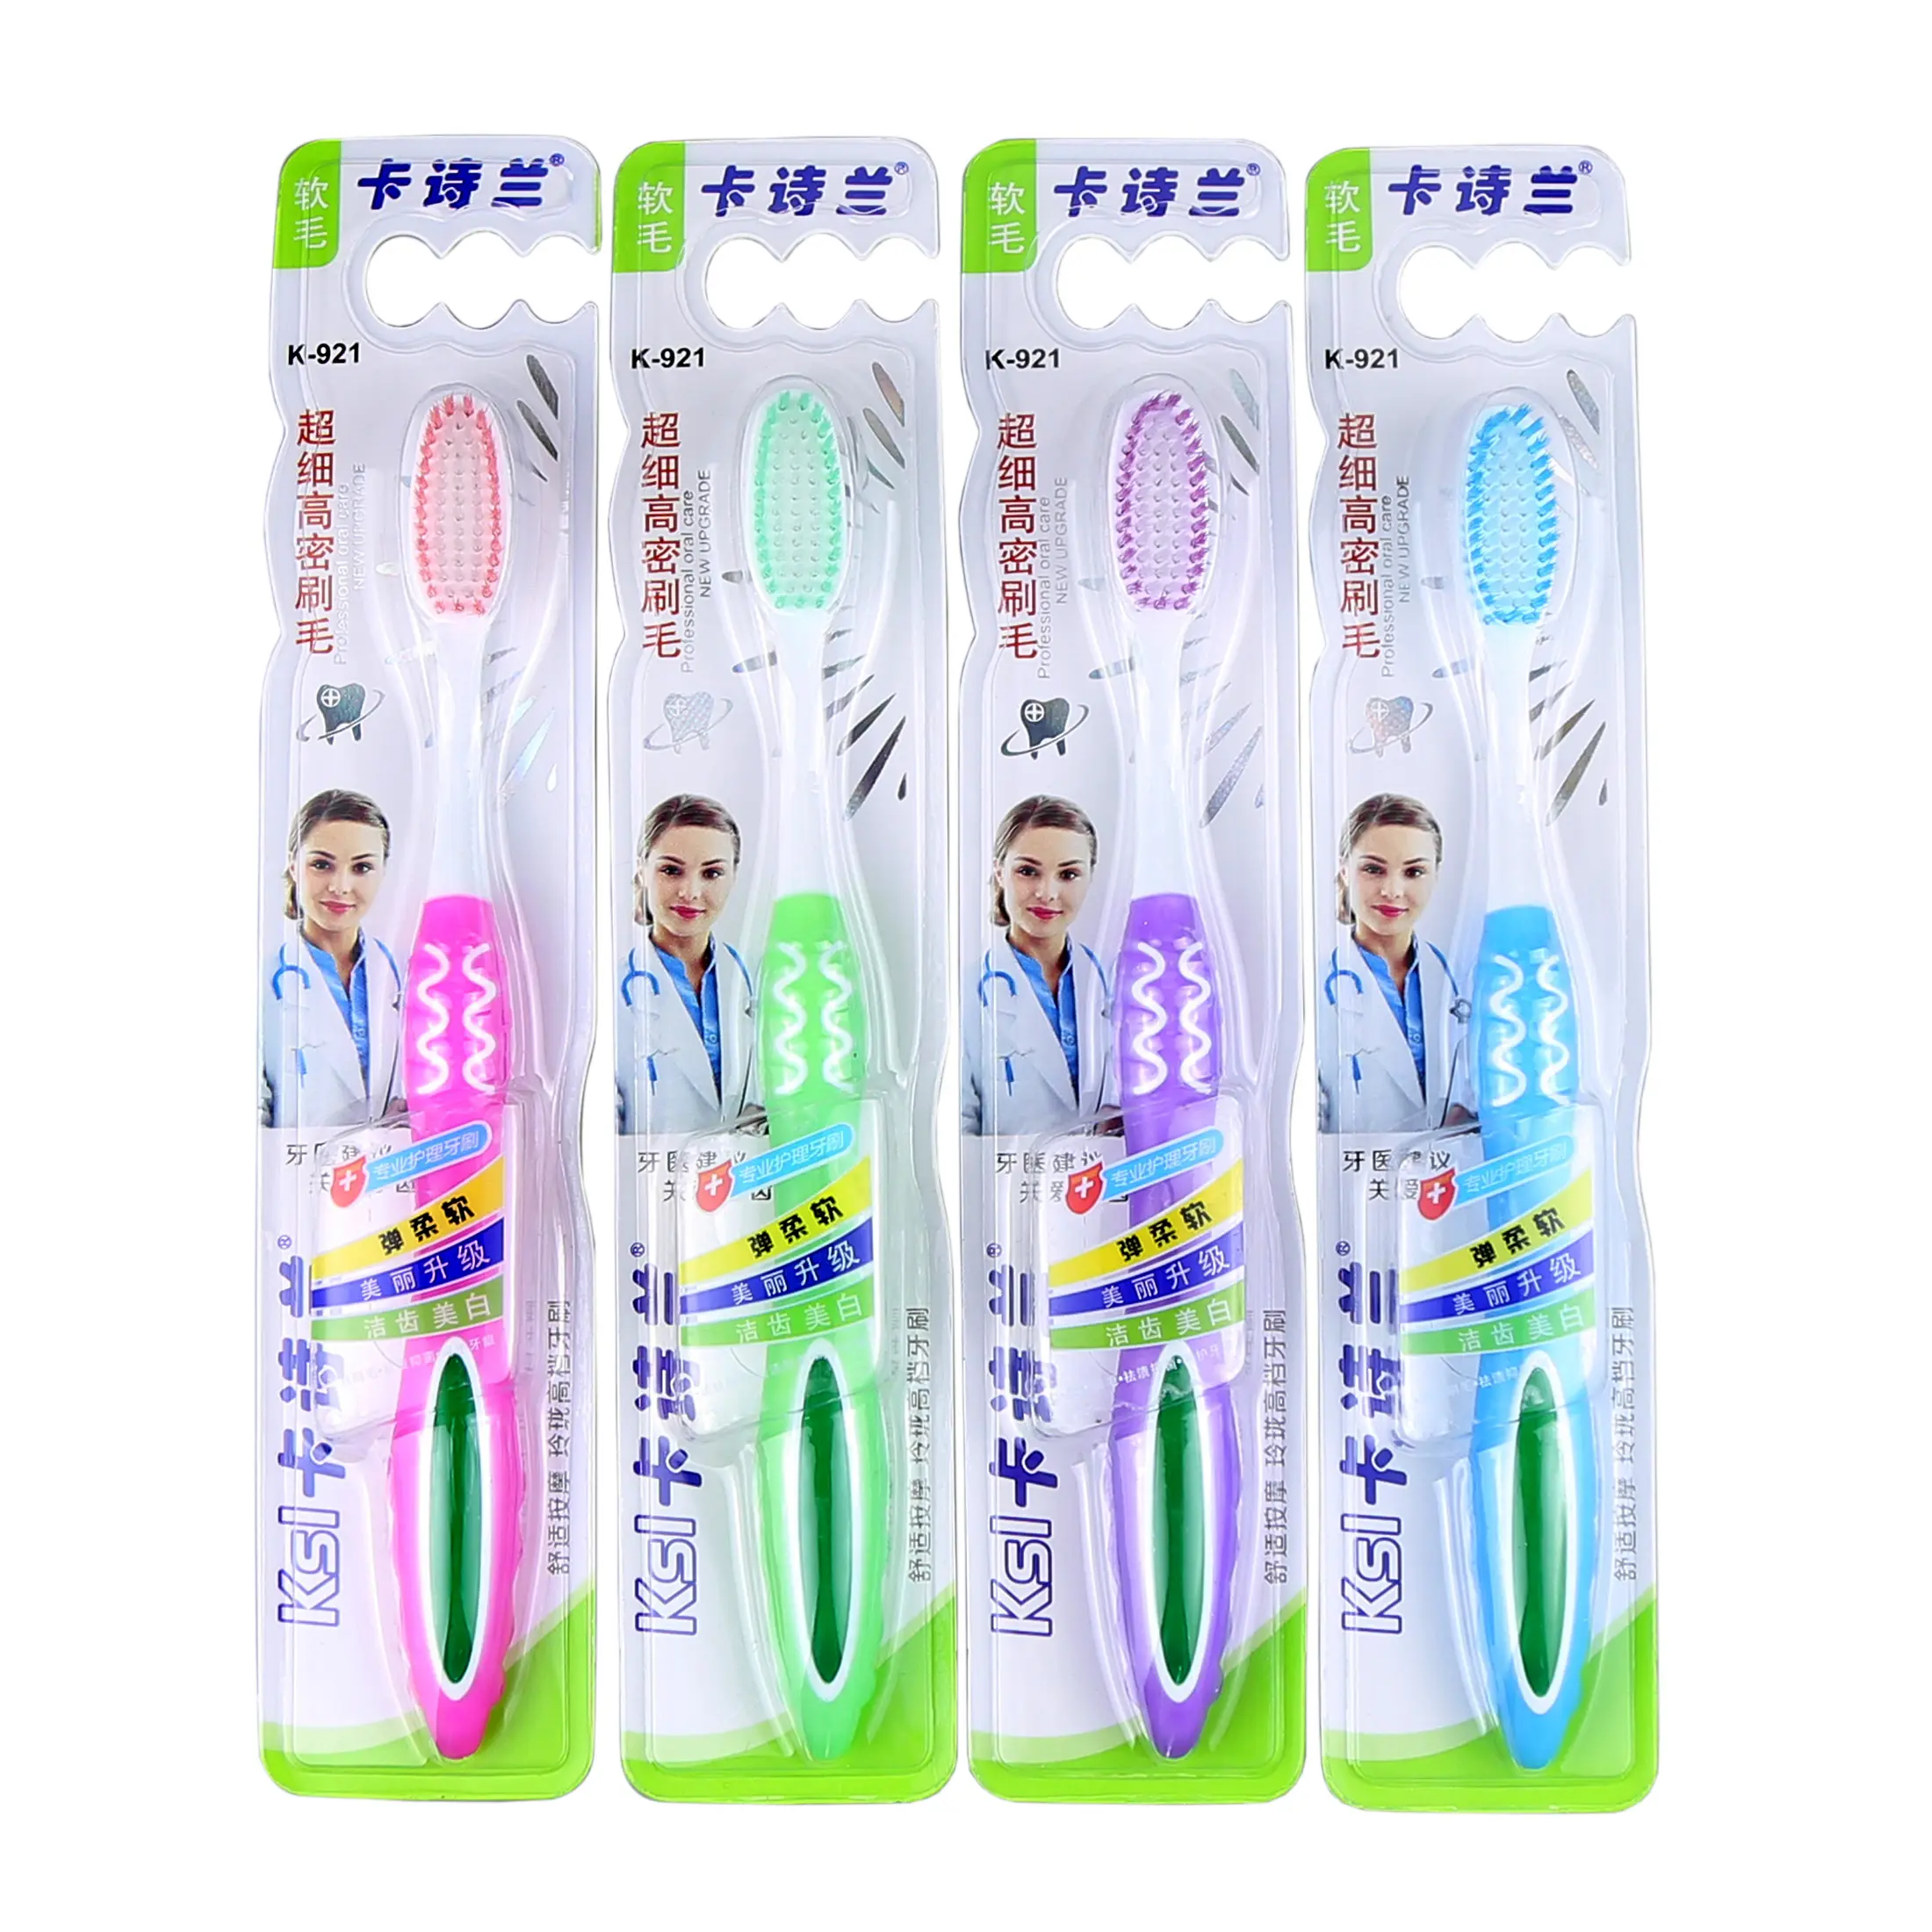 Benutzer definierte Logo OEM Mundpflege Reise nach Hause mehr Option Borsten Kunststoff griff Erwachsenen Zahnbürste Professional Company